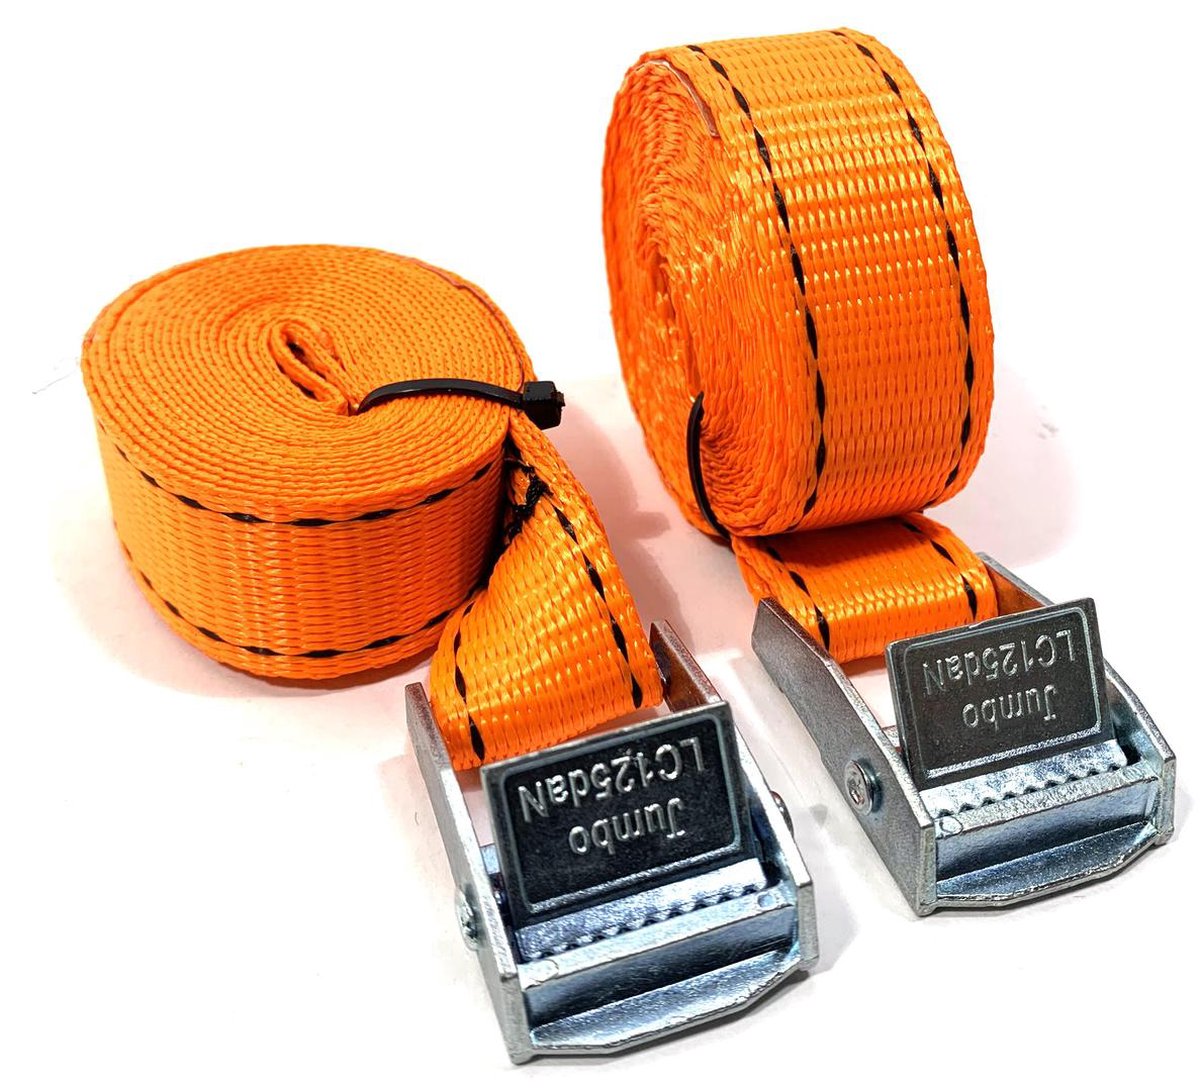 JUMBO Spanband 2 stuks, 250cm, 25mm met klemgesp , 250KG. Fluo oranje TUV gecertificeerd, conform EN-12195-2